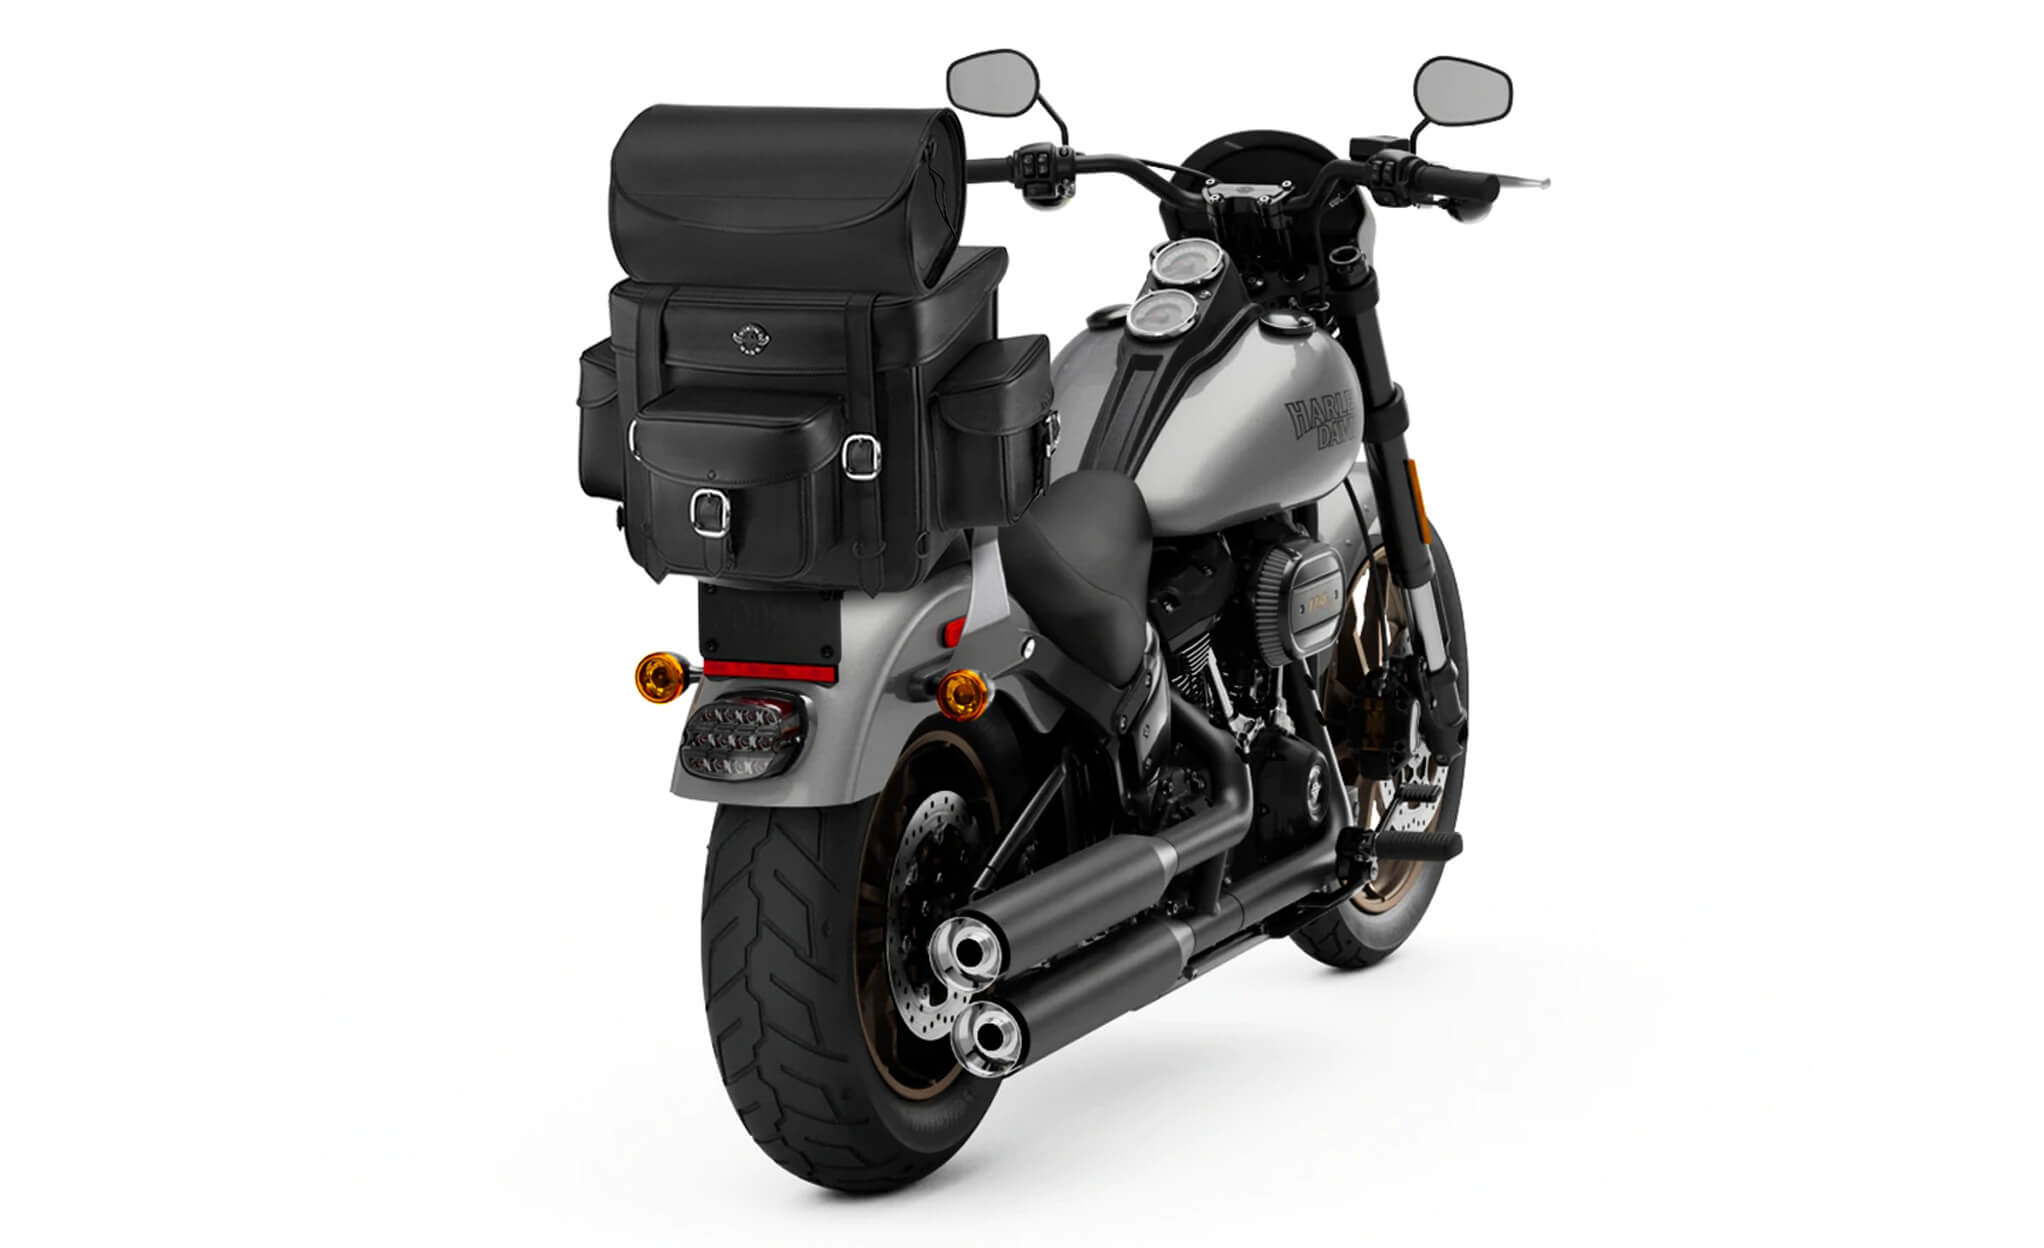 Viking Revival Series Large Suzuki Motorcycle Sissy Bar Bag Bag on Bike View @expand